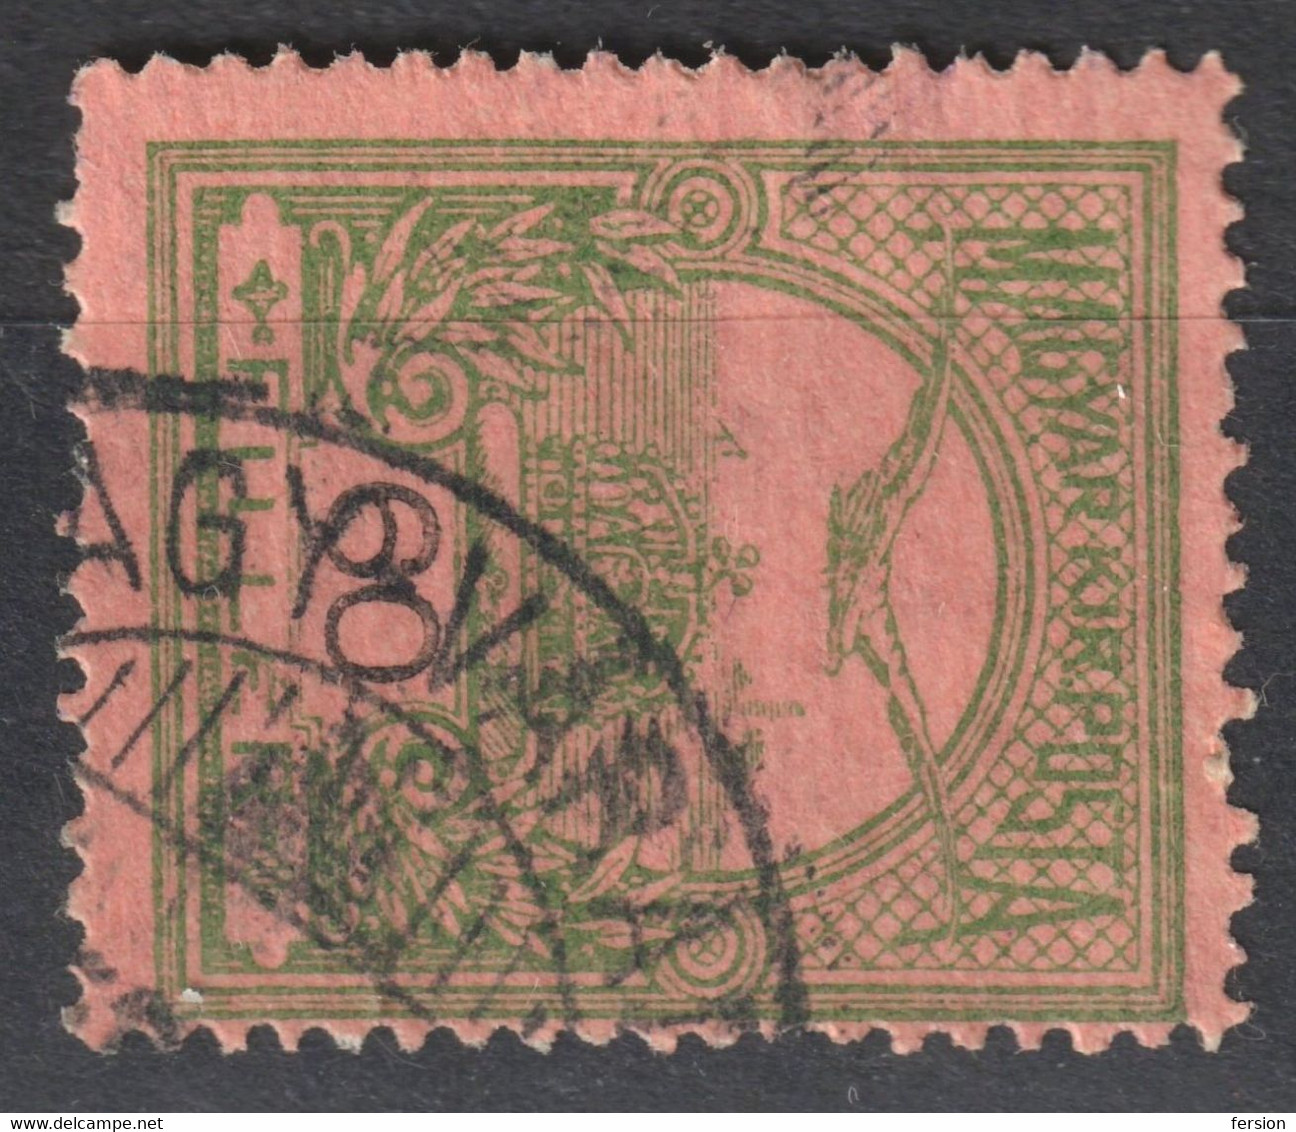 NAGYVÁRAD ORADEA Postmark POST Center / TURUL Crown 1906 Hungary Romania Transylvania Bihar County KuK - 60 Fill - Transsylvanië